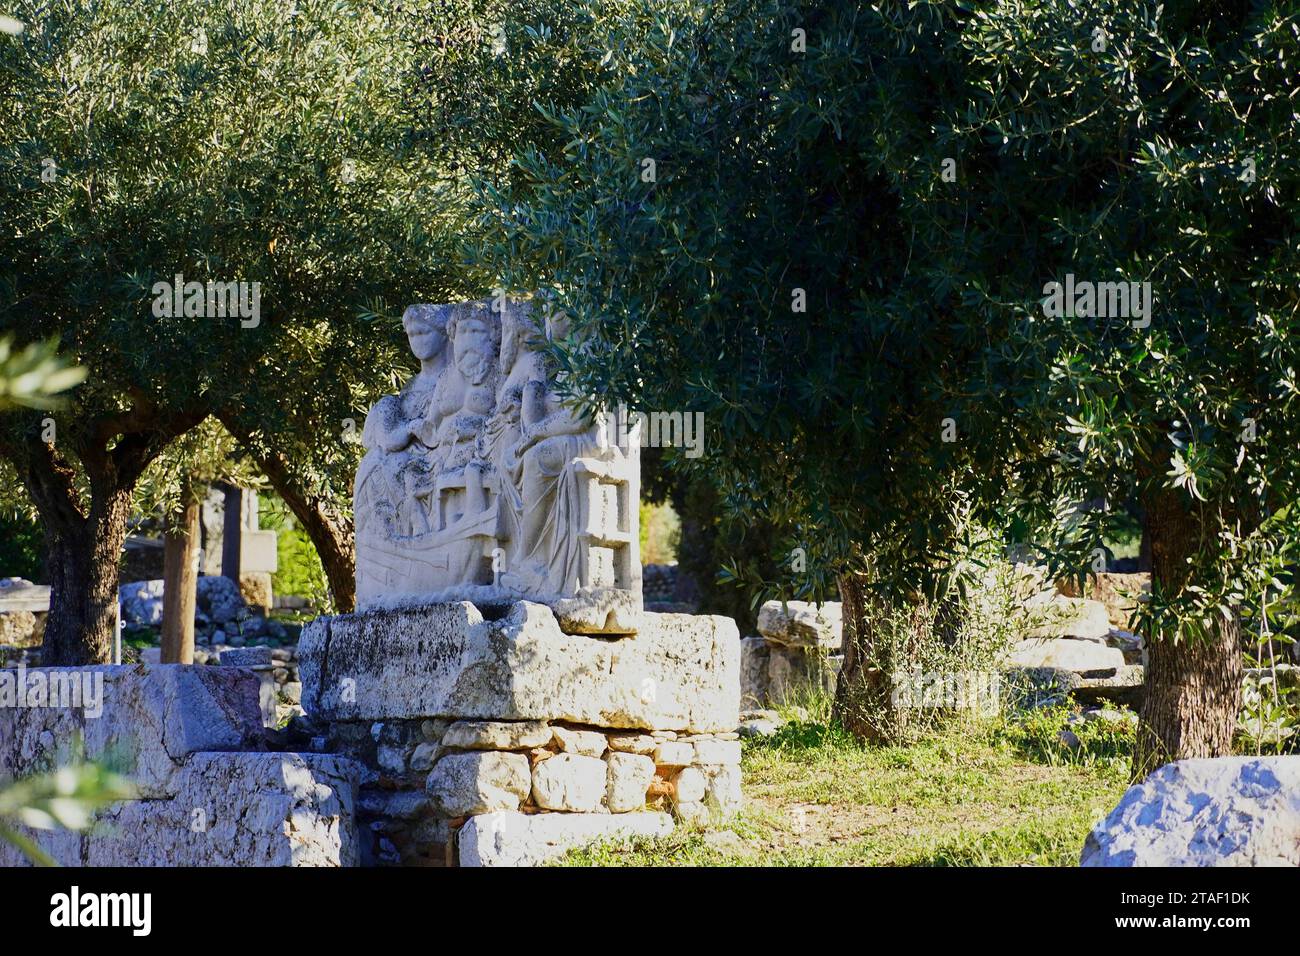 Ruines antiques dans le cimetière de Keramikos. Une sculpture funéraire montrant la personne qui part dans un bateau, et ses proches Banque D'Images